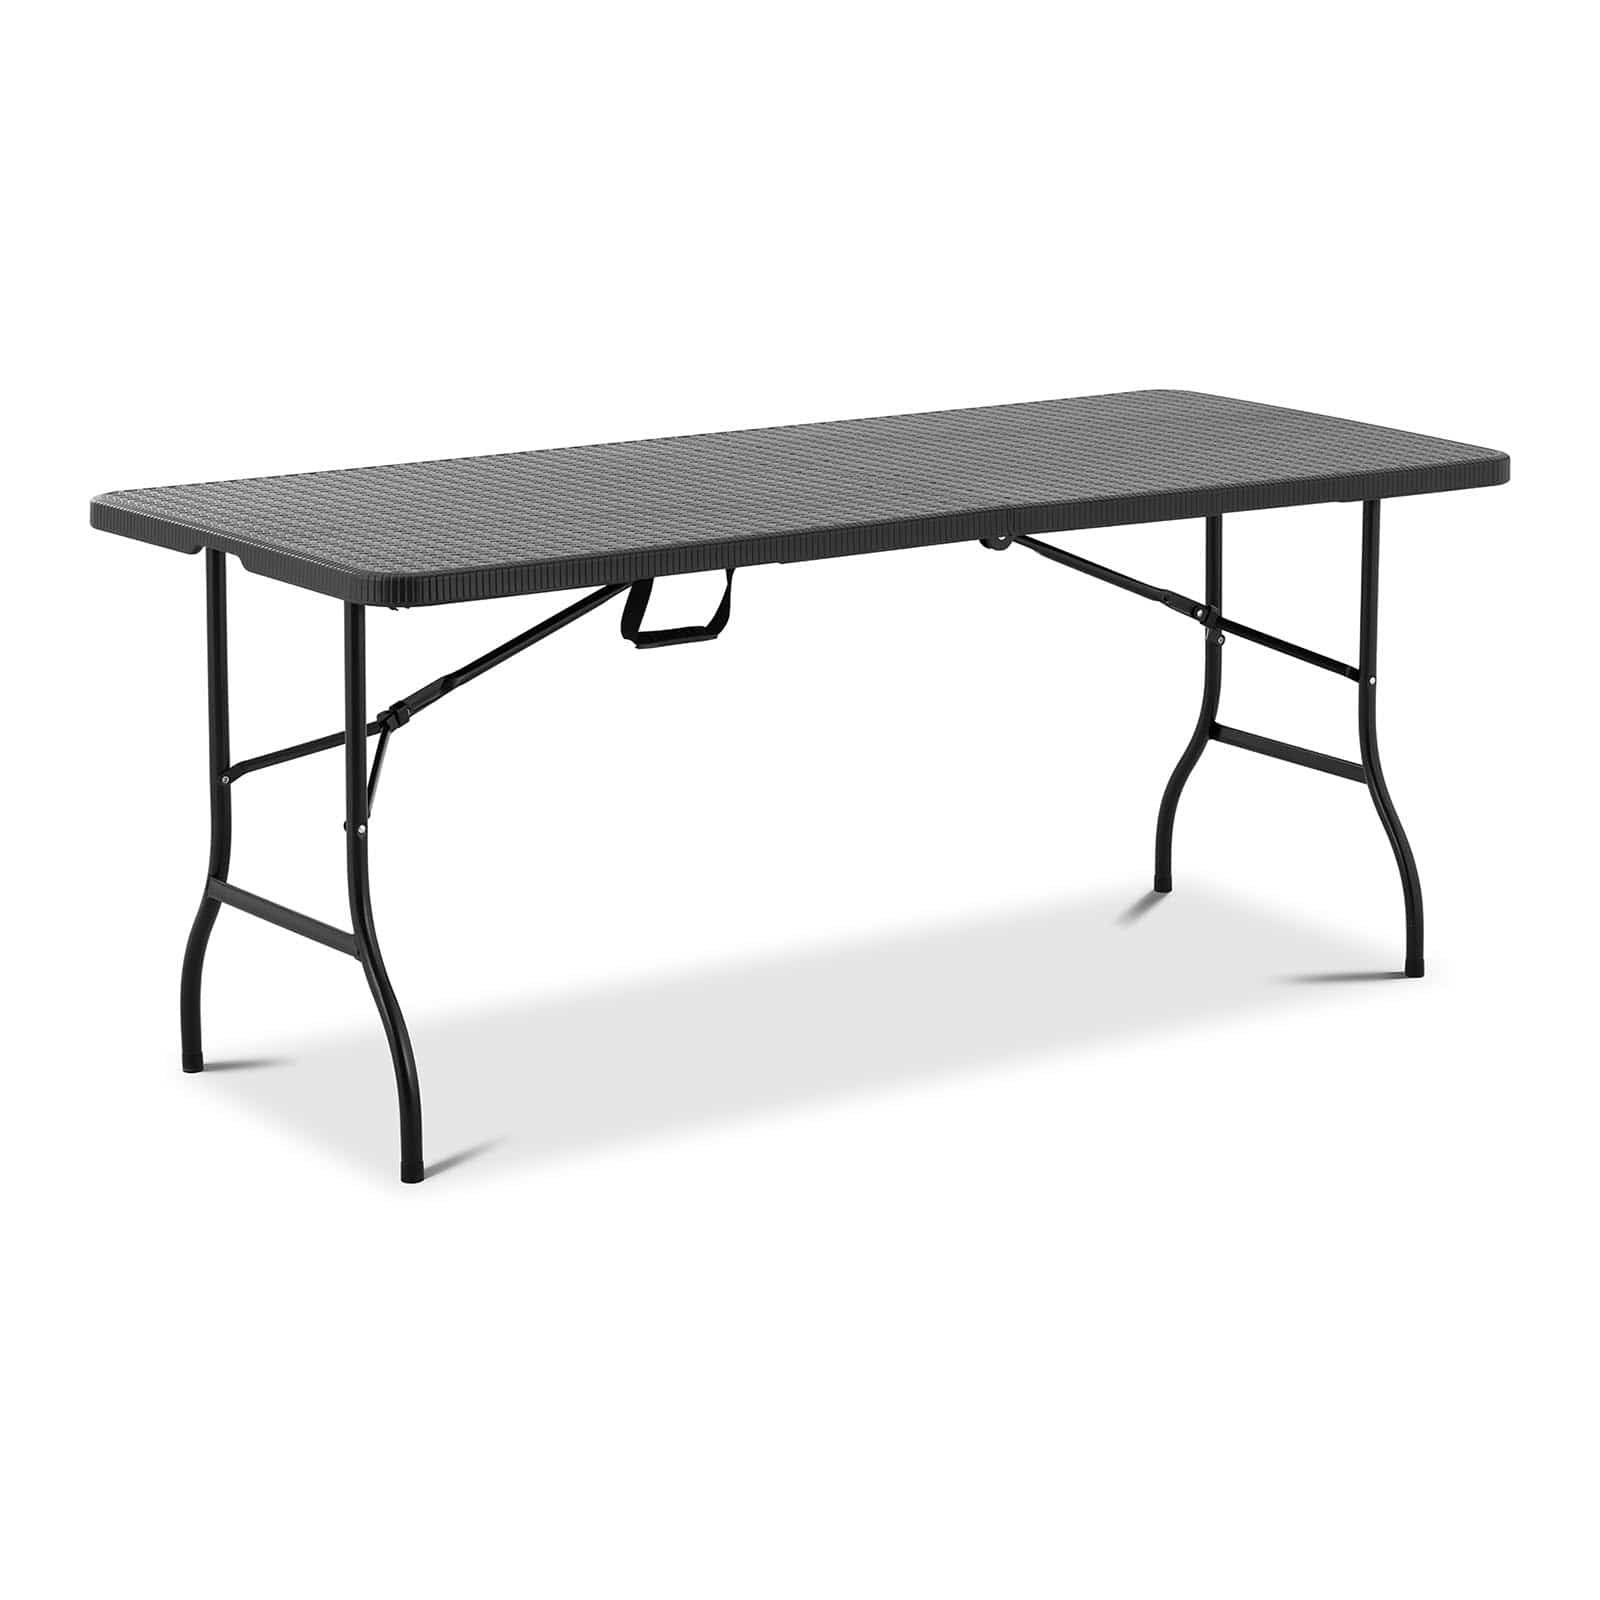 Table rectangulaire pliante 183 X 74 cm (6/8 personnes) - Falaise réception